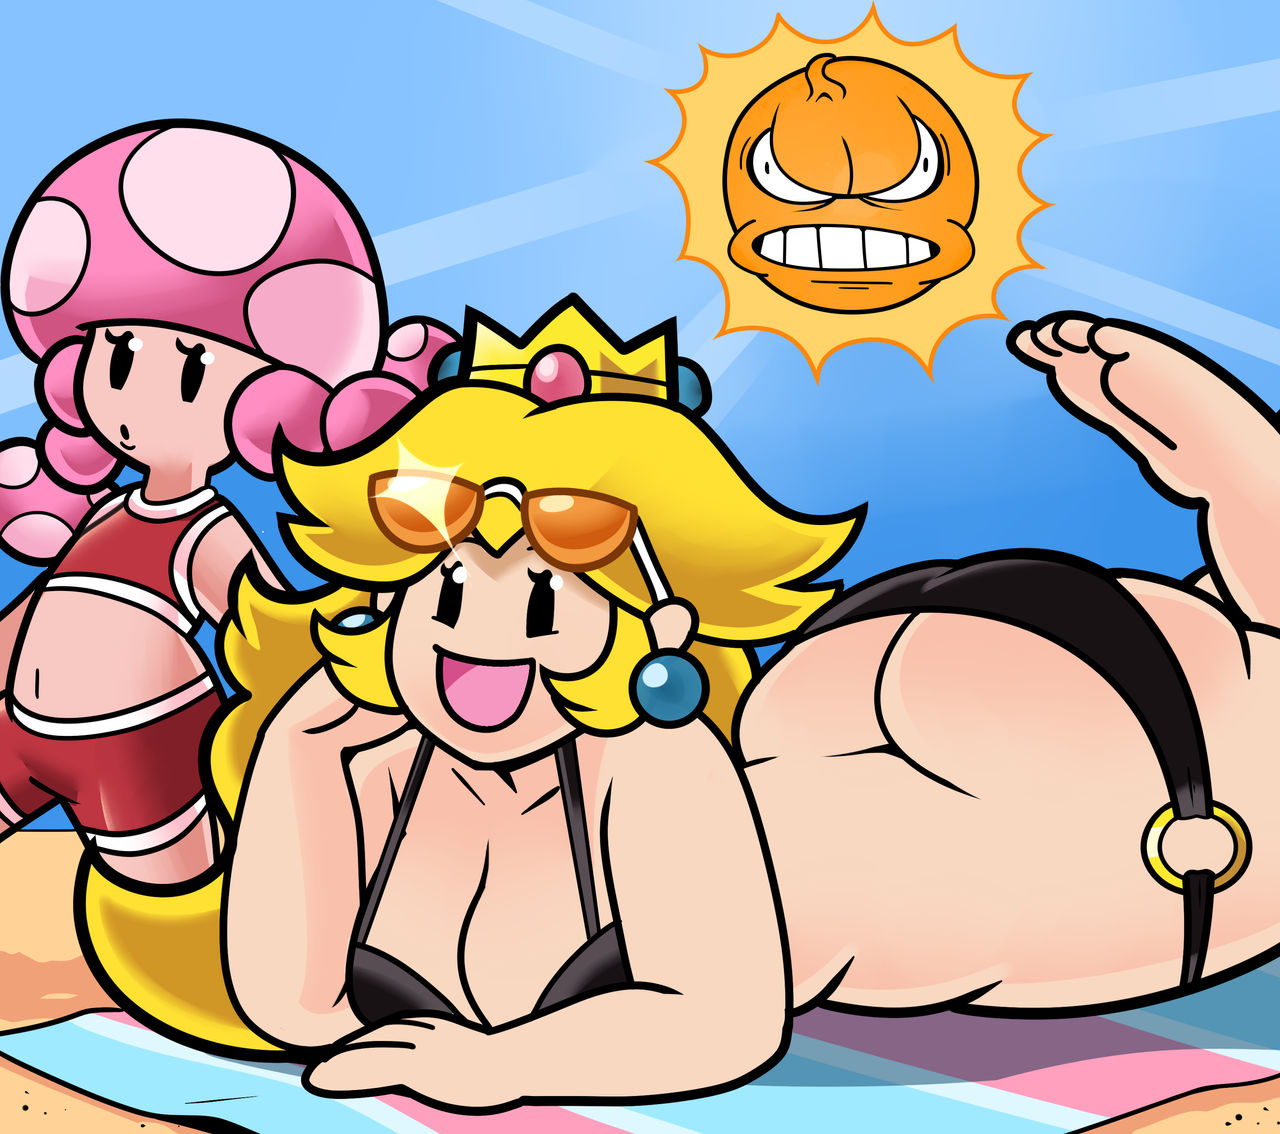 Princess peach ass bikini